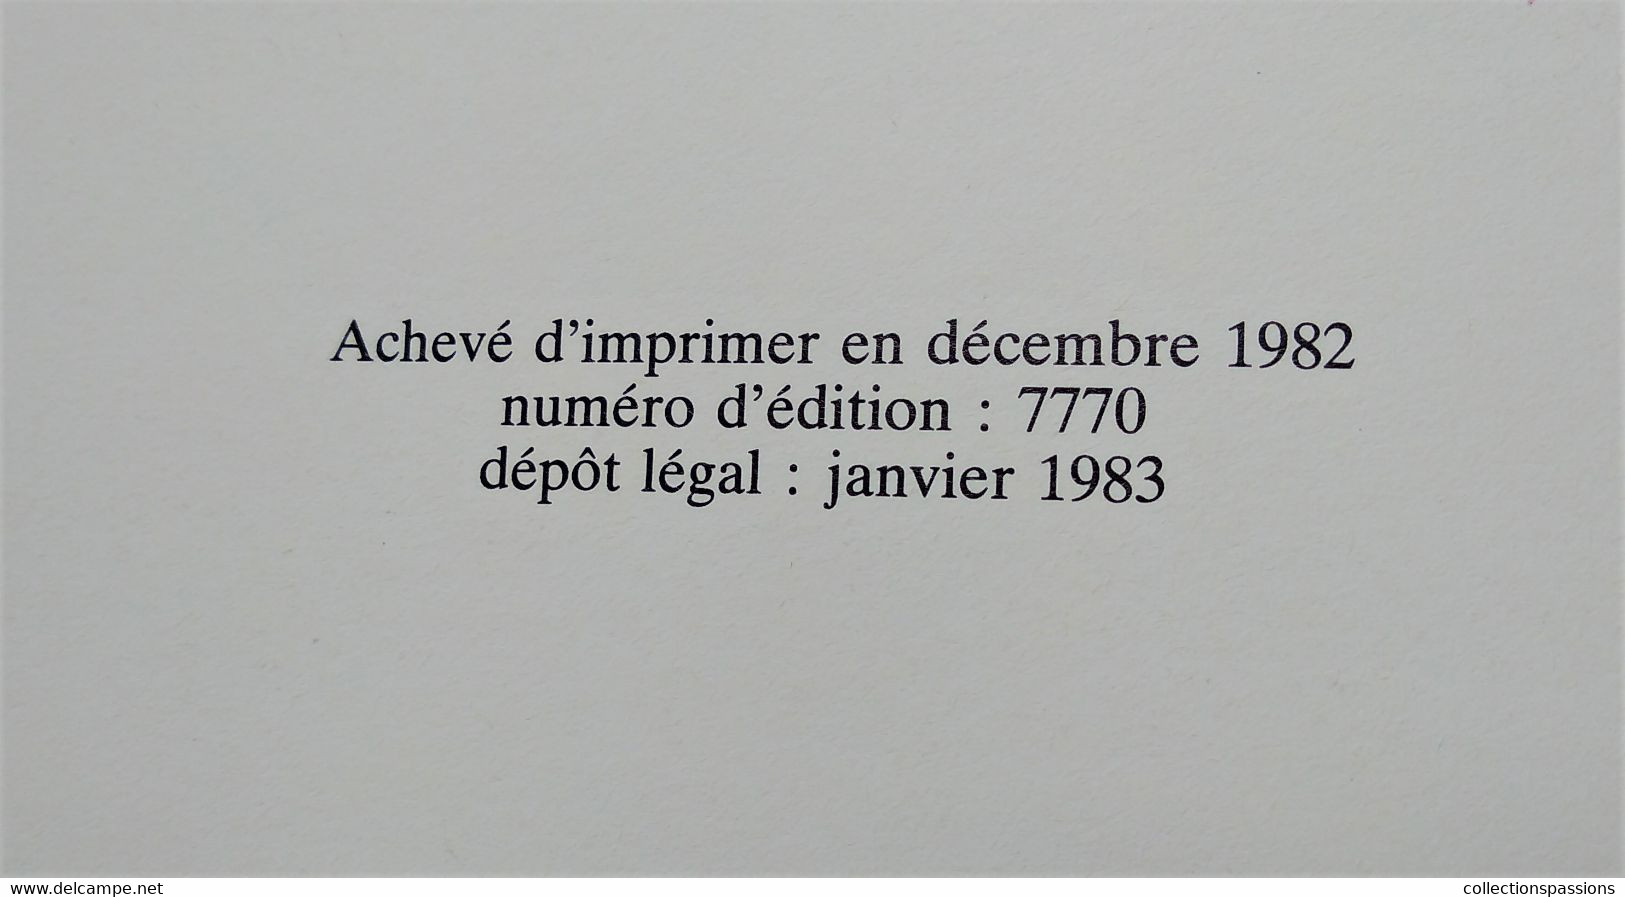 BD - EDMOND LE COCHON VA EN AFRIQUE - Rochette/Veyron - 1983 -